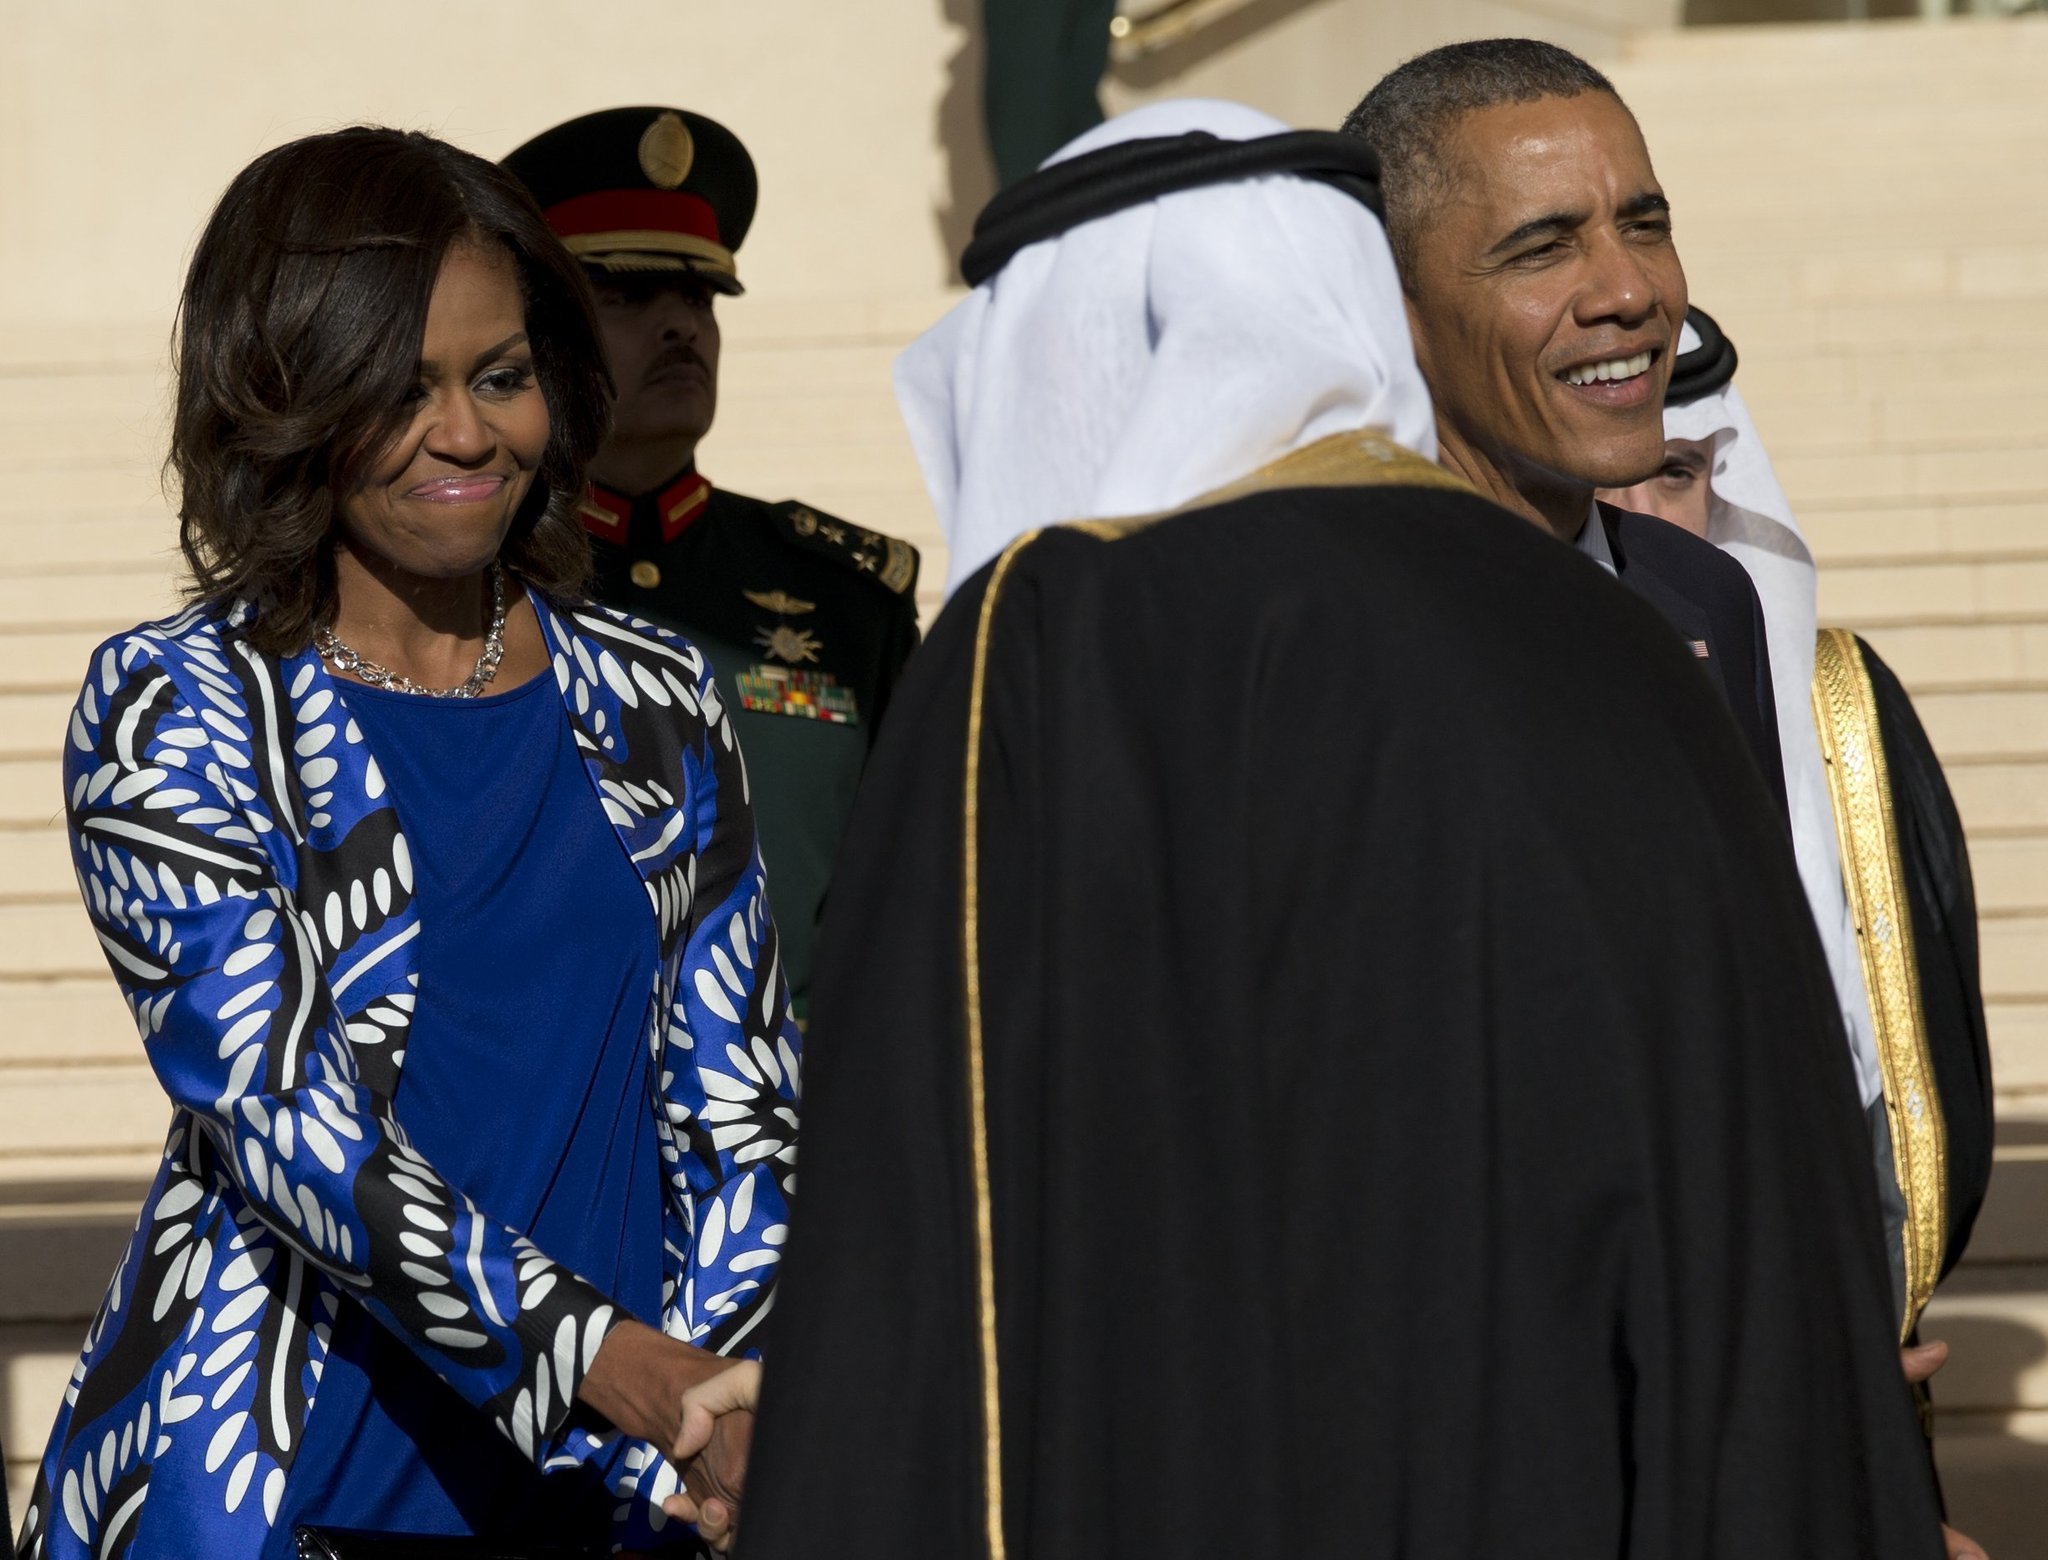 la-fg-michelle-obama-head-scarf-saudi-arabia-20150128